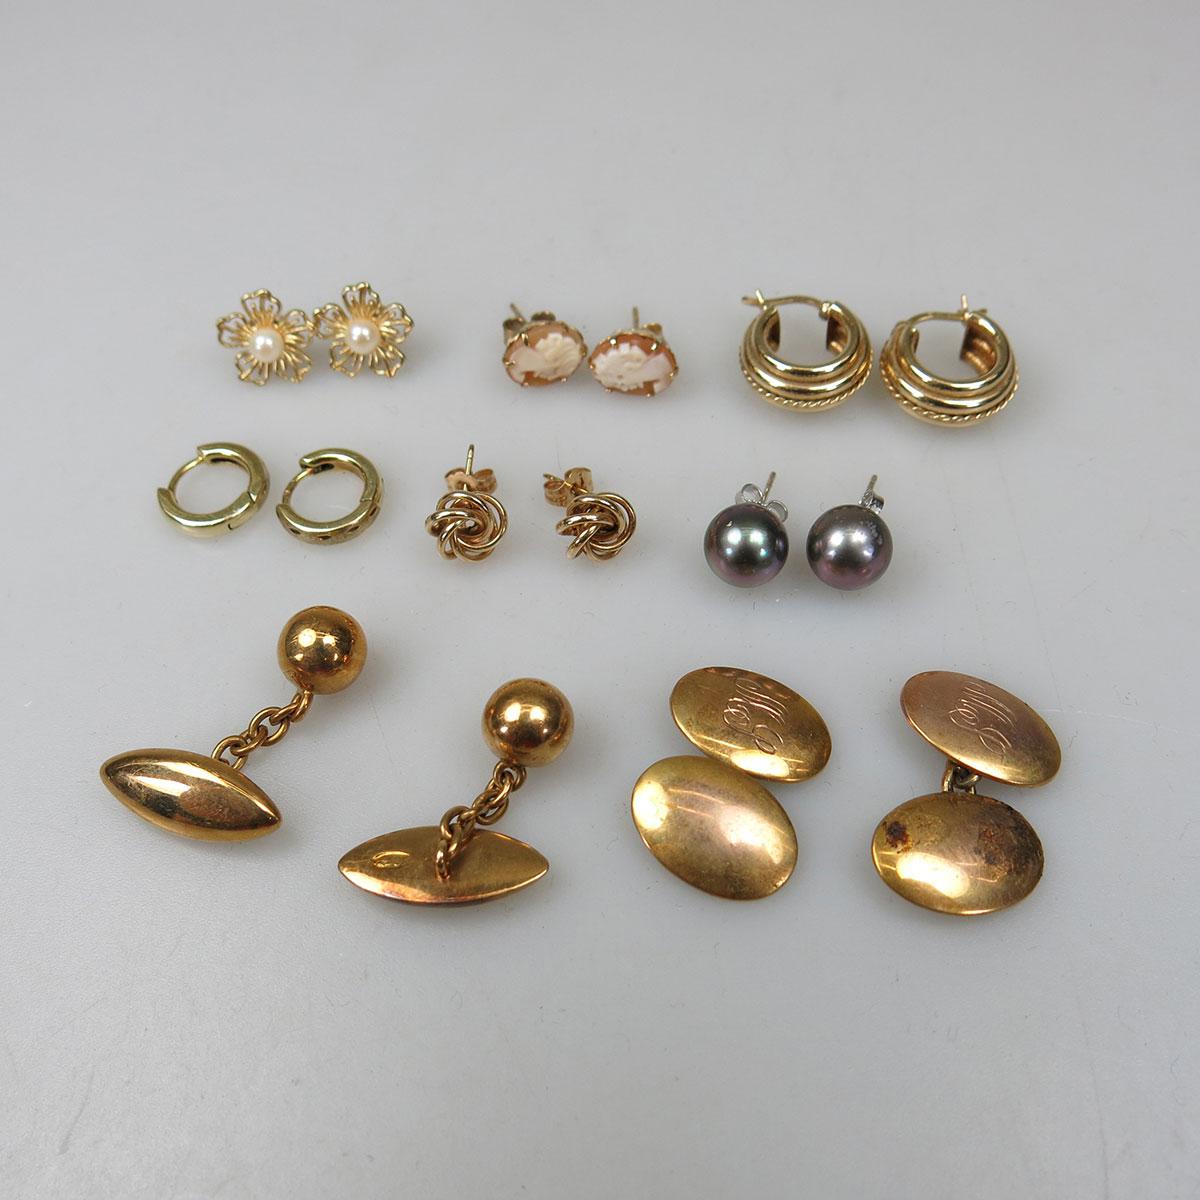 6 Pairs Of 14k Gold Earrings